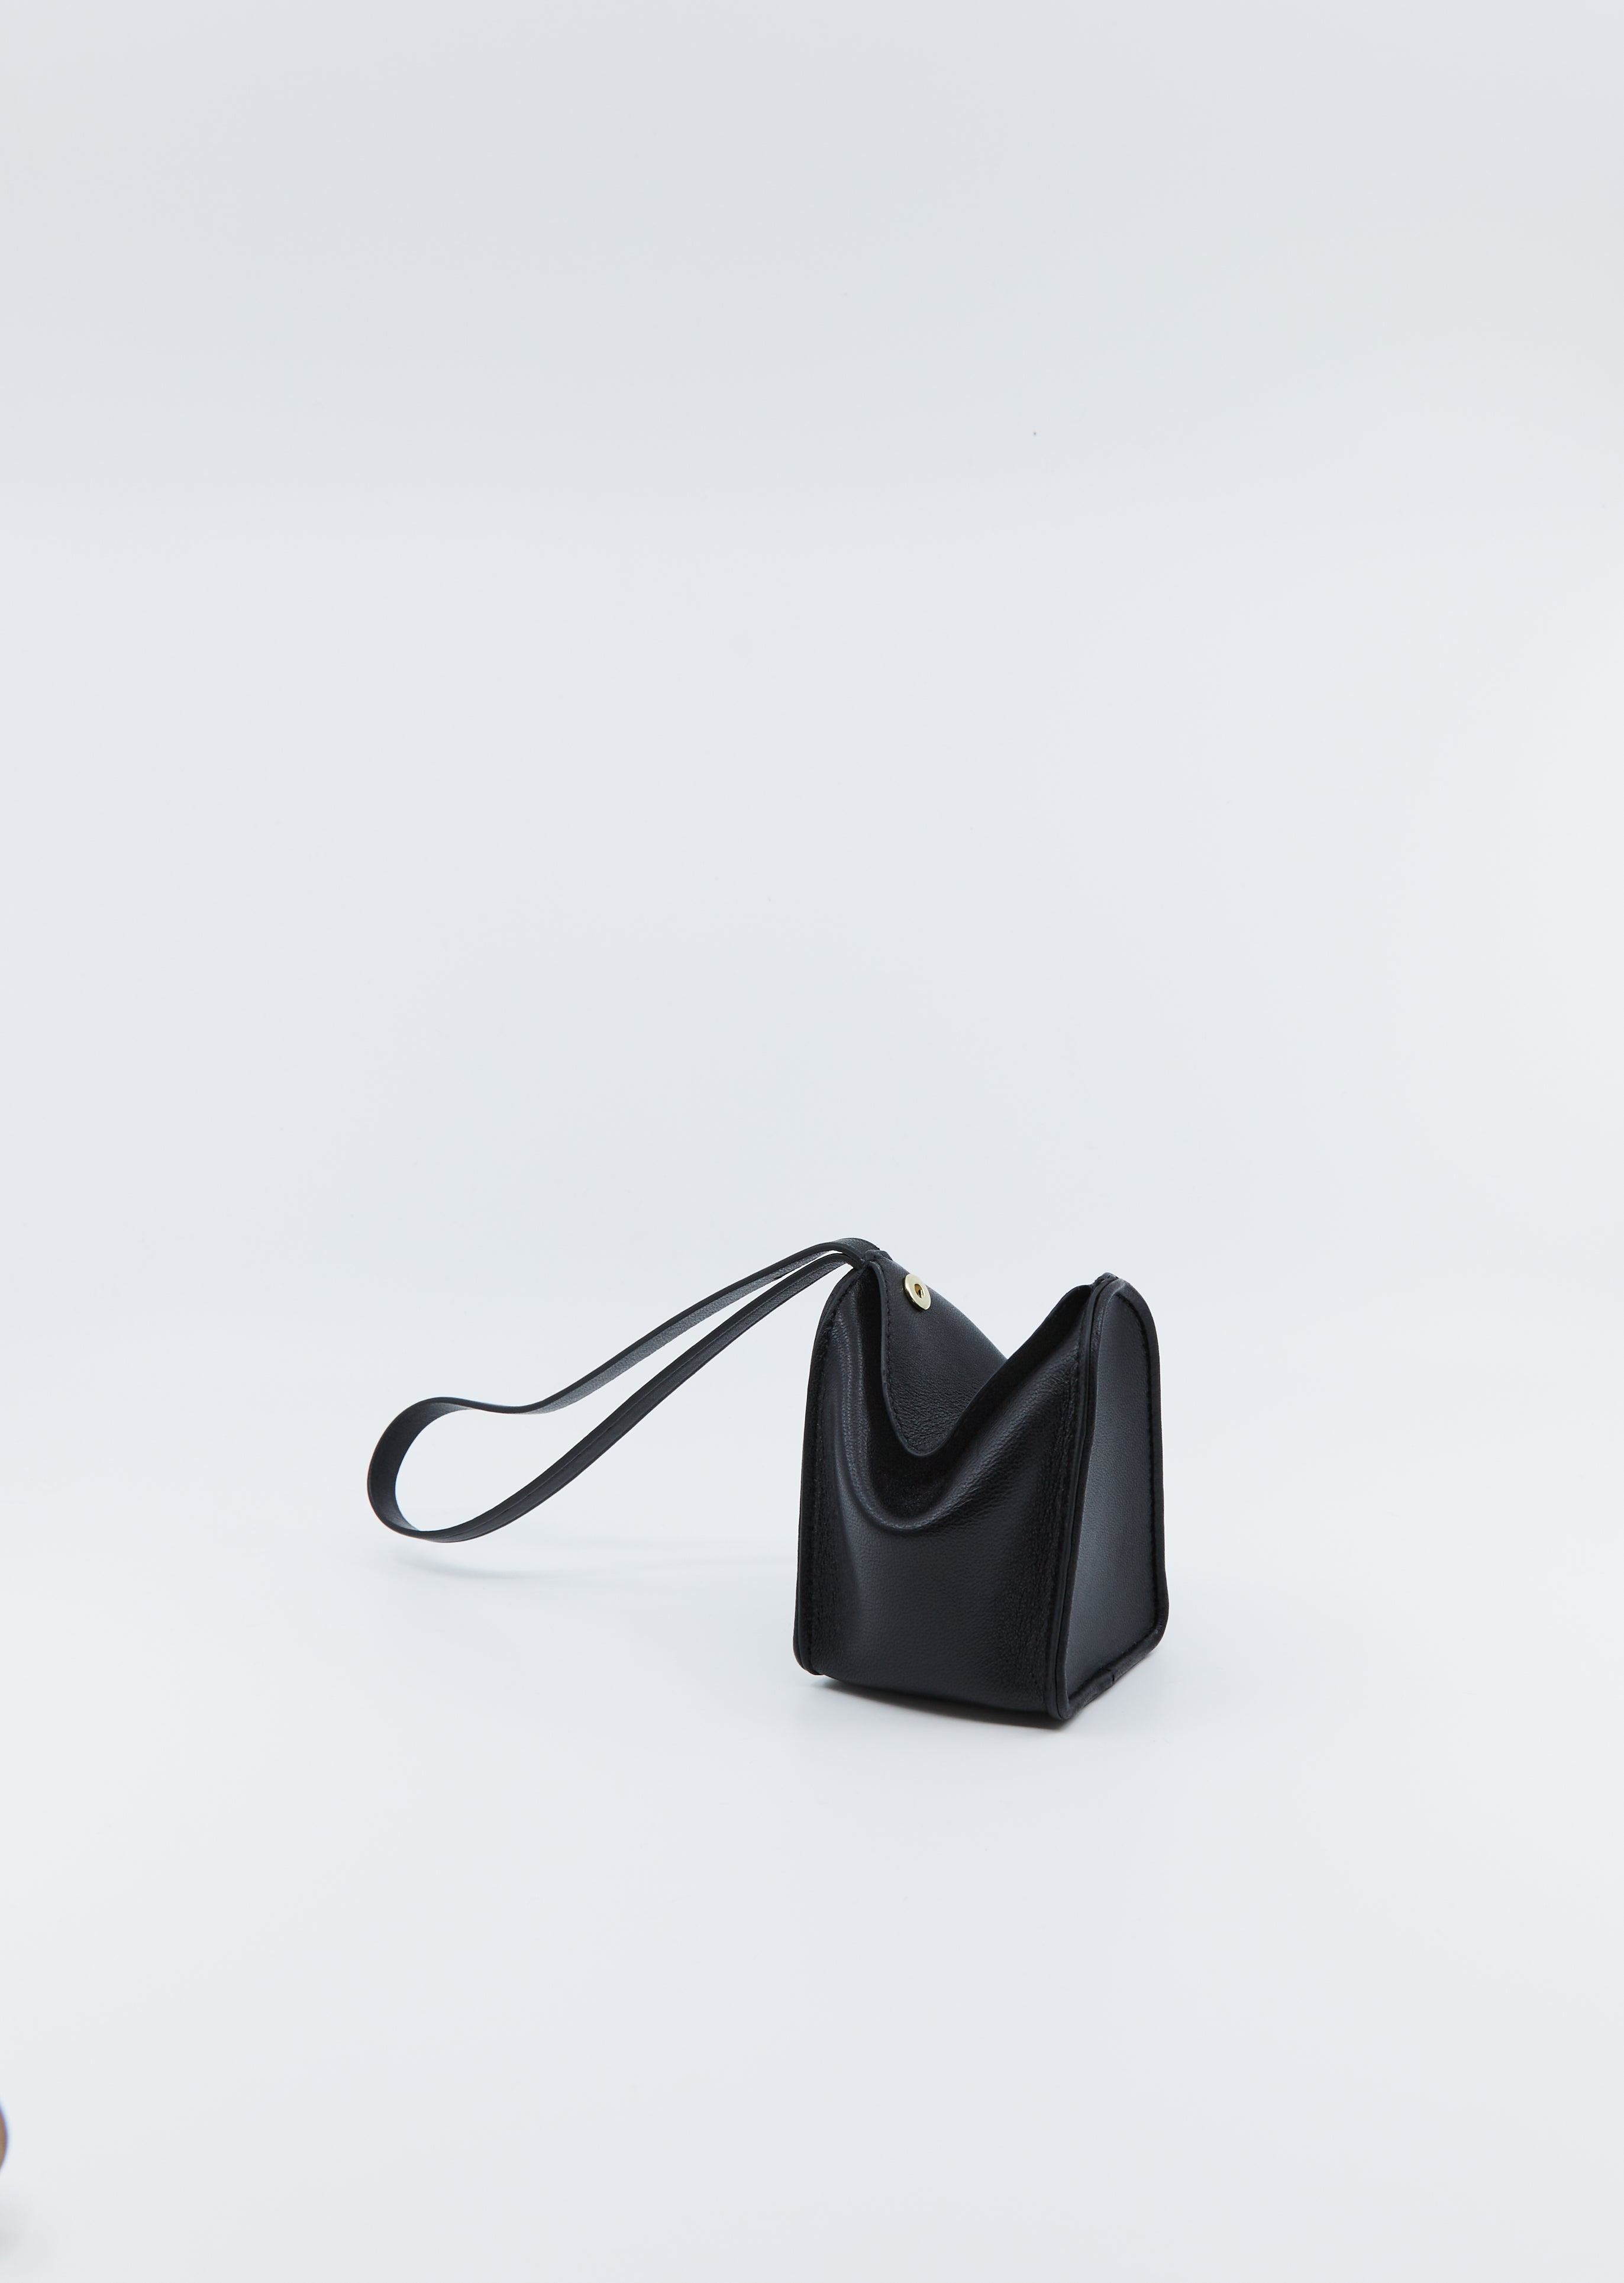 Black Evening Clutch Purse with Strap – Laflore Paris